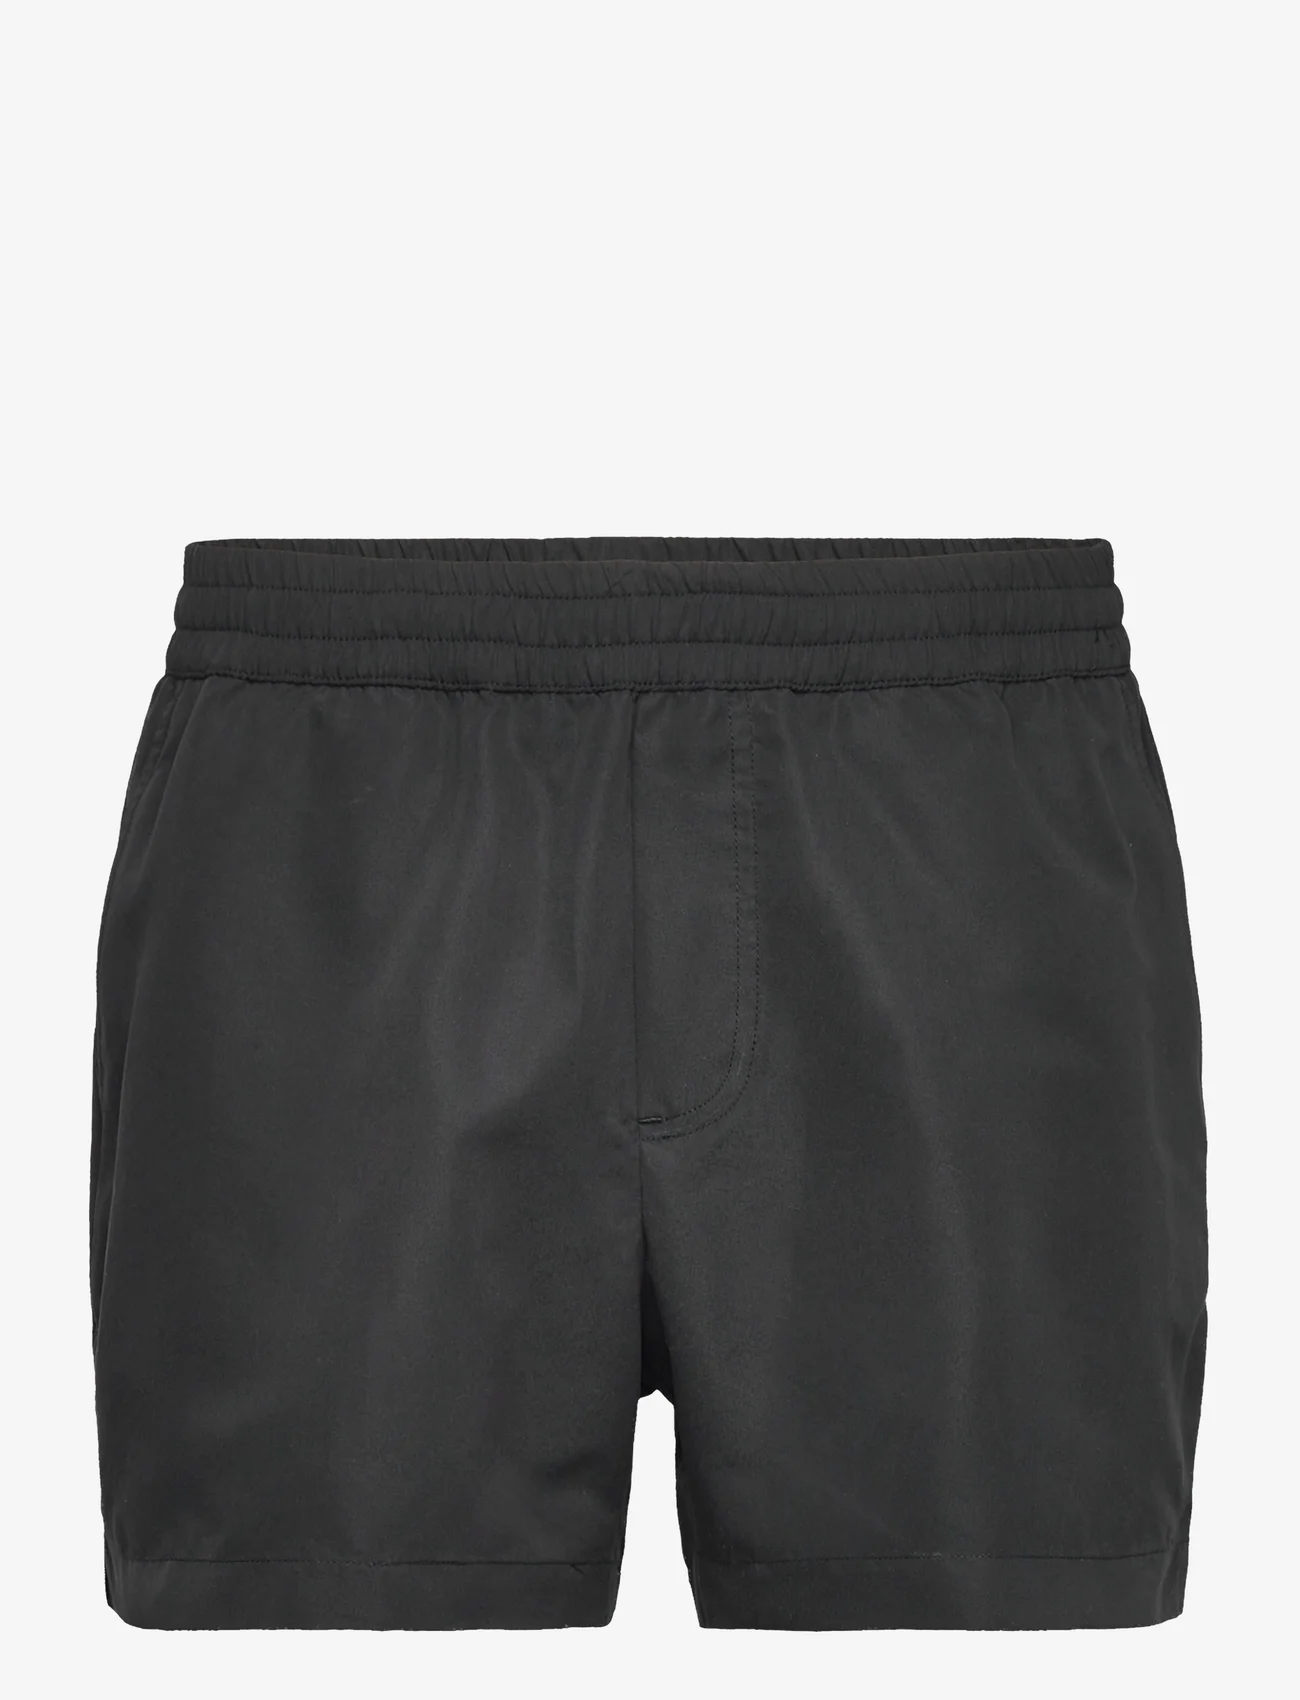 Wood Wood - Roy Solid Swim Shorts - badeshorts - black - 0